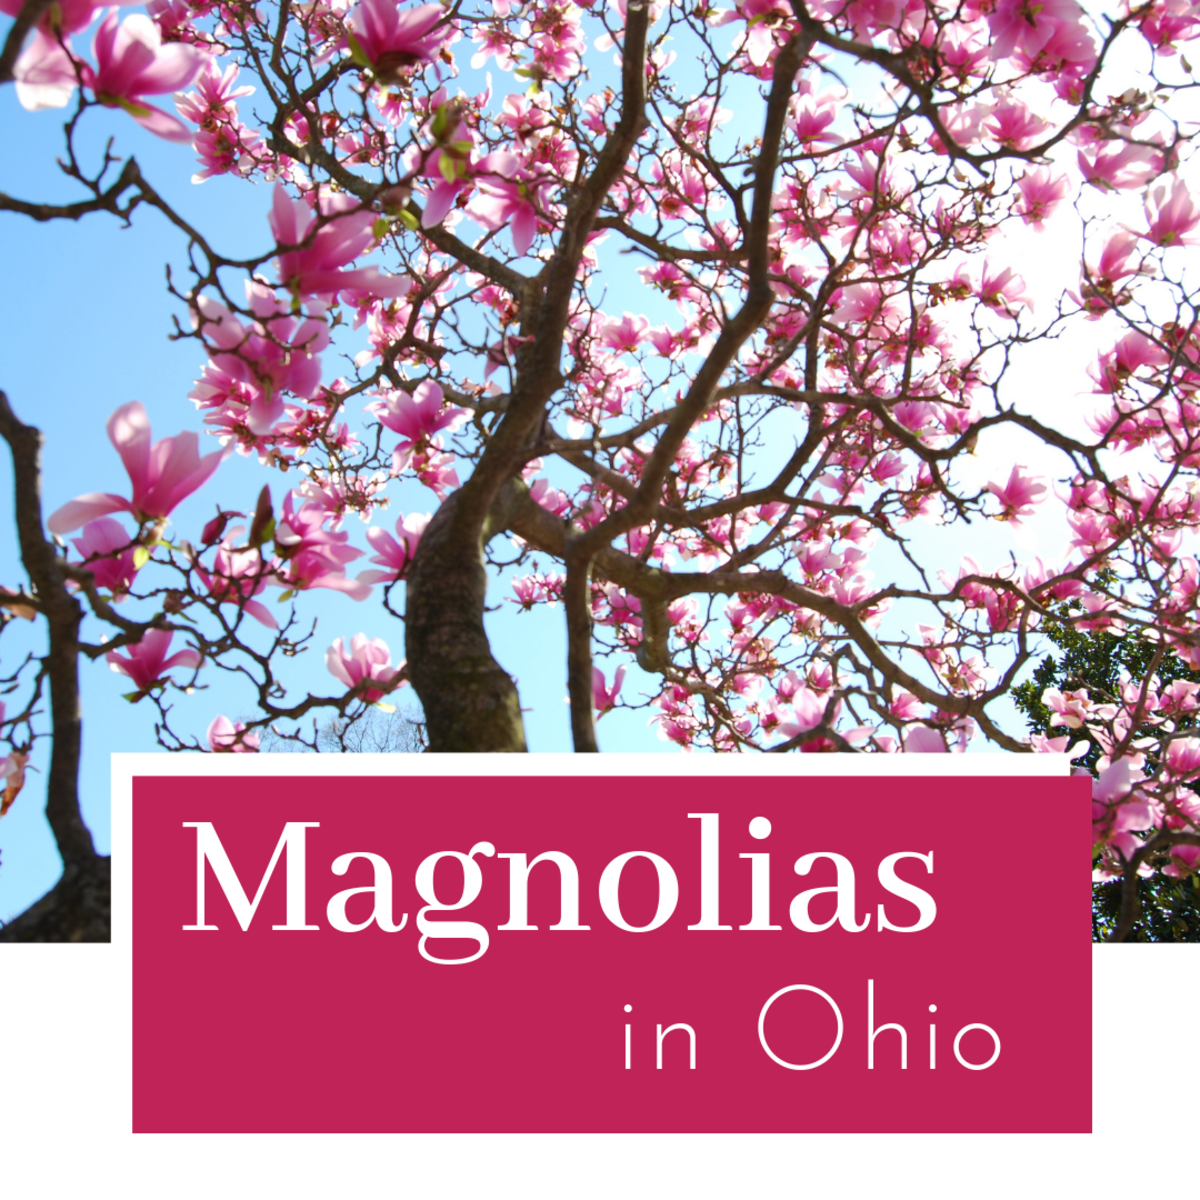 Magnolia species in Ohio